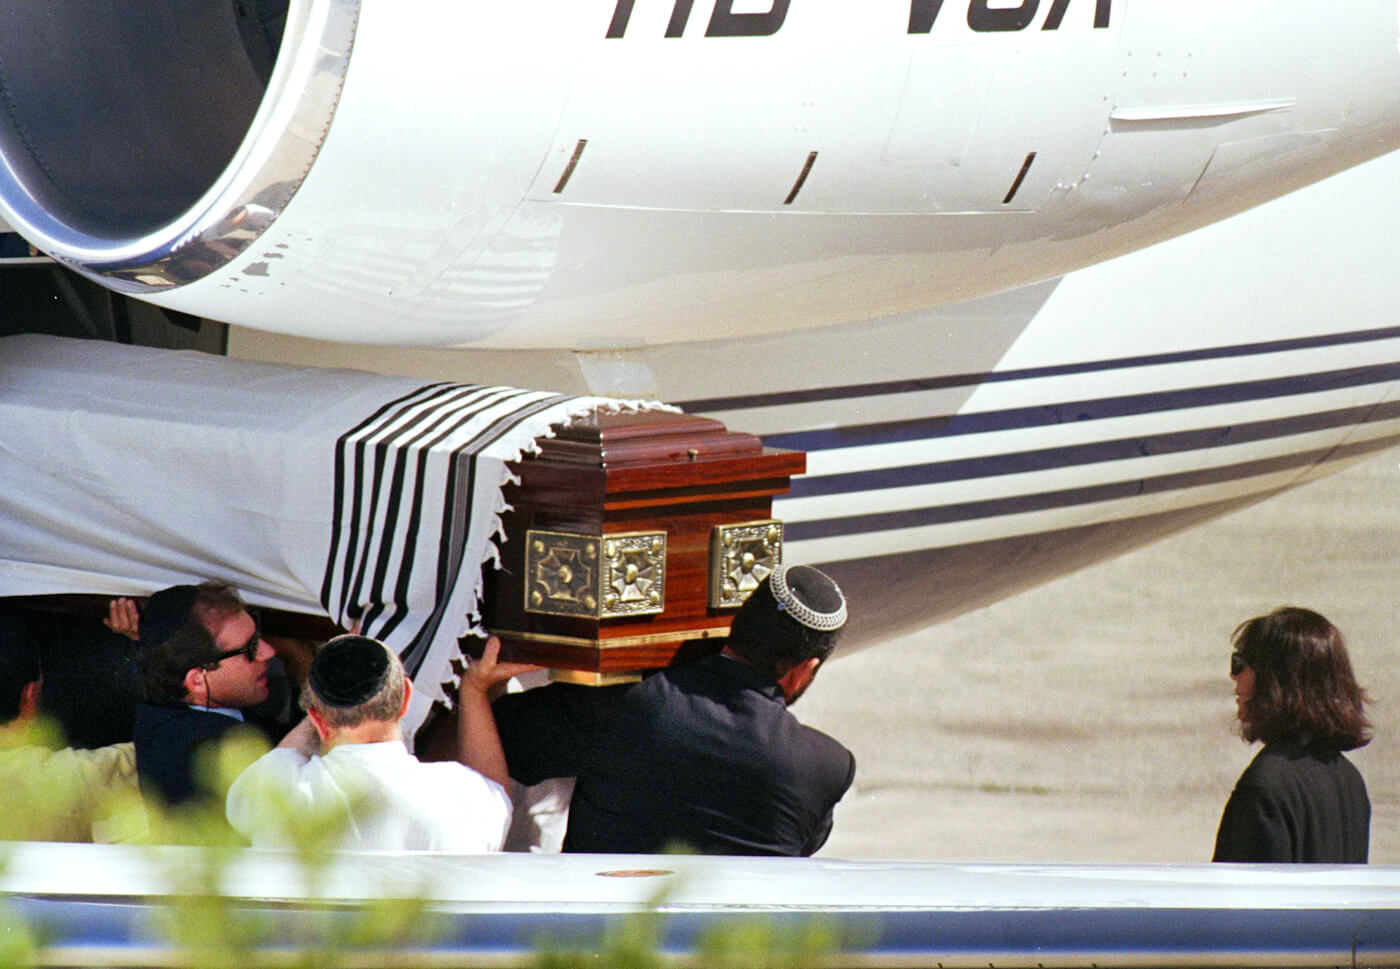 8 年 1991 月 XNUMX 日，罗伯特·麦克斯韦 (Robert Maxwell) 的女儿吉斯莱恩·麦克斯韦 (Ghislaine Maxwell) 看着他的棺材从一架飞机上卸下。 美联社